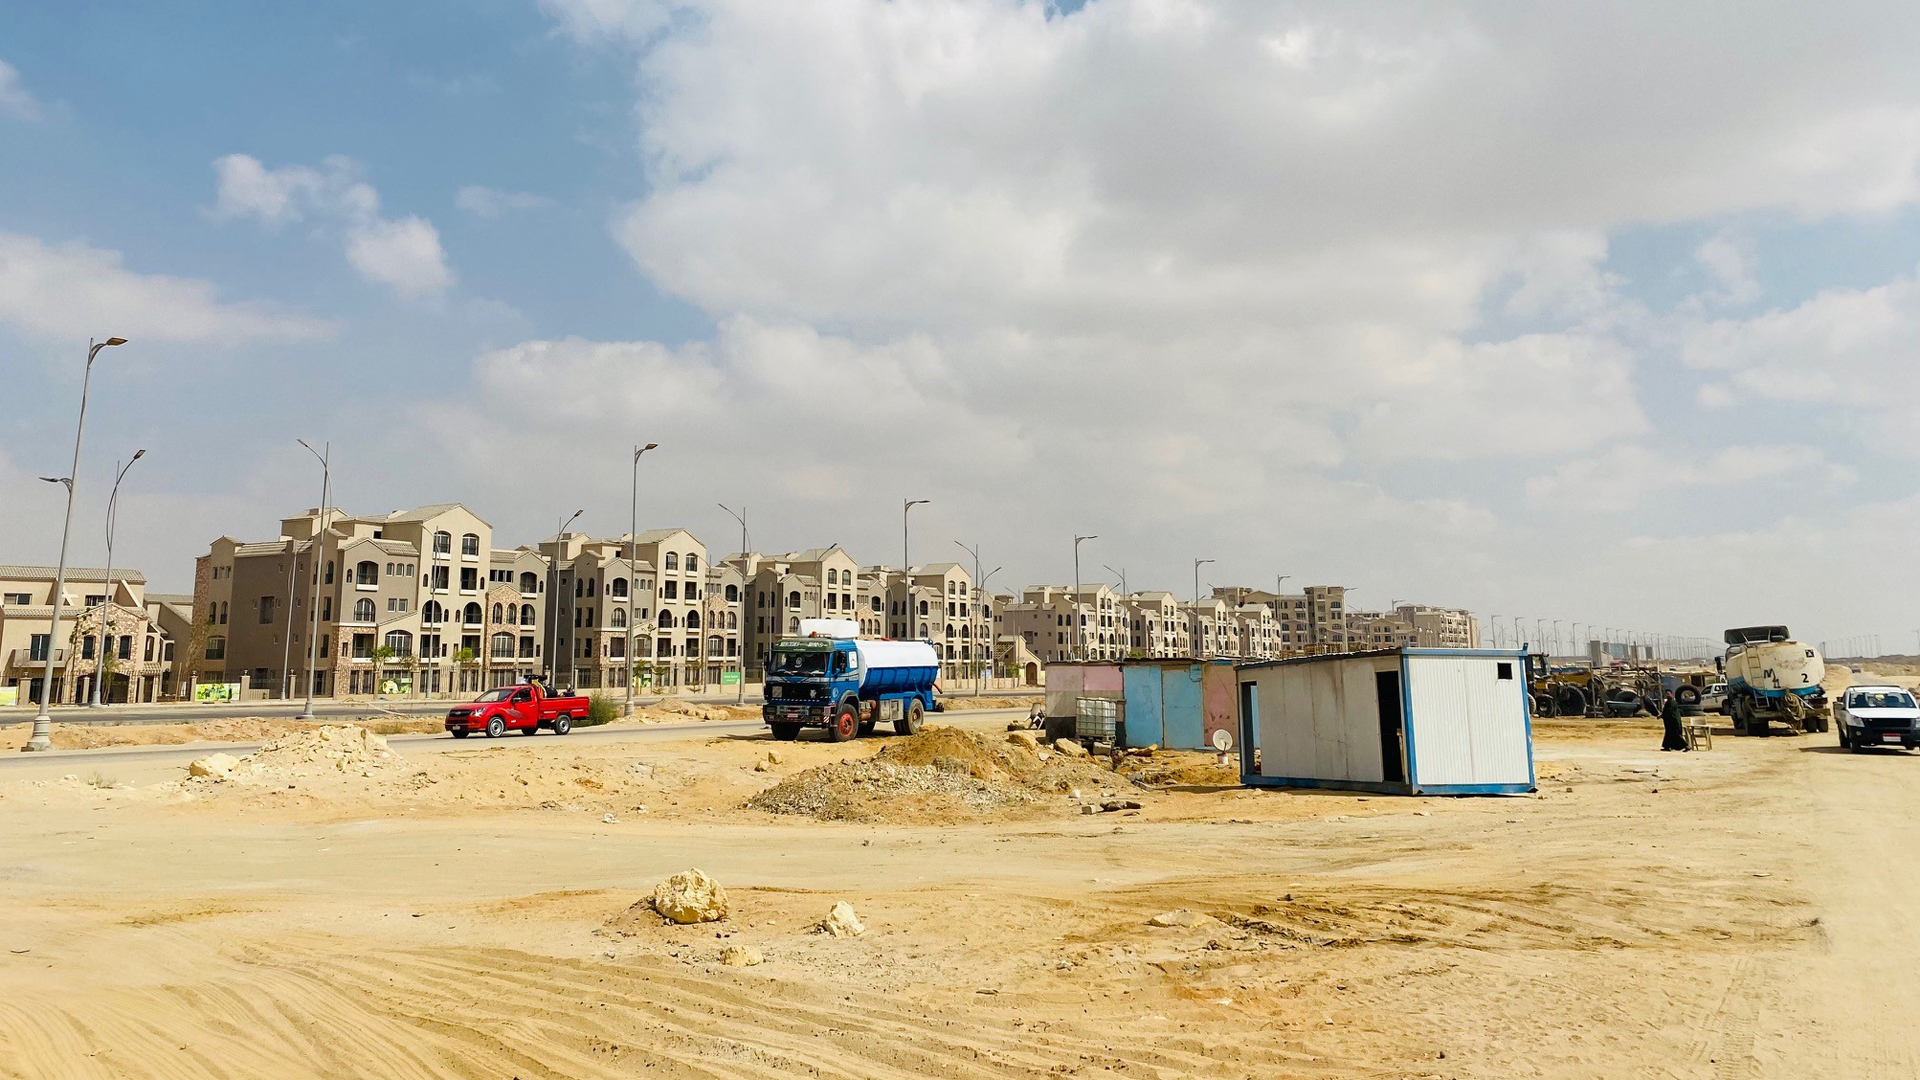 Die Bauarbeiten an der neuen Hauptstadt Ägyptens sind noch in vollem Gange, wie Container und schwere Fahrzeuge zeigen. | Daniel Hechler/ARD-Studio Kairo